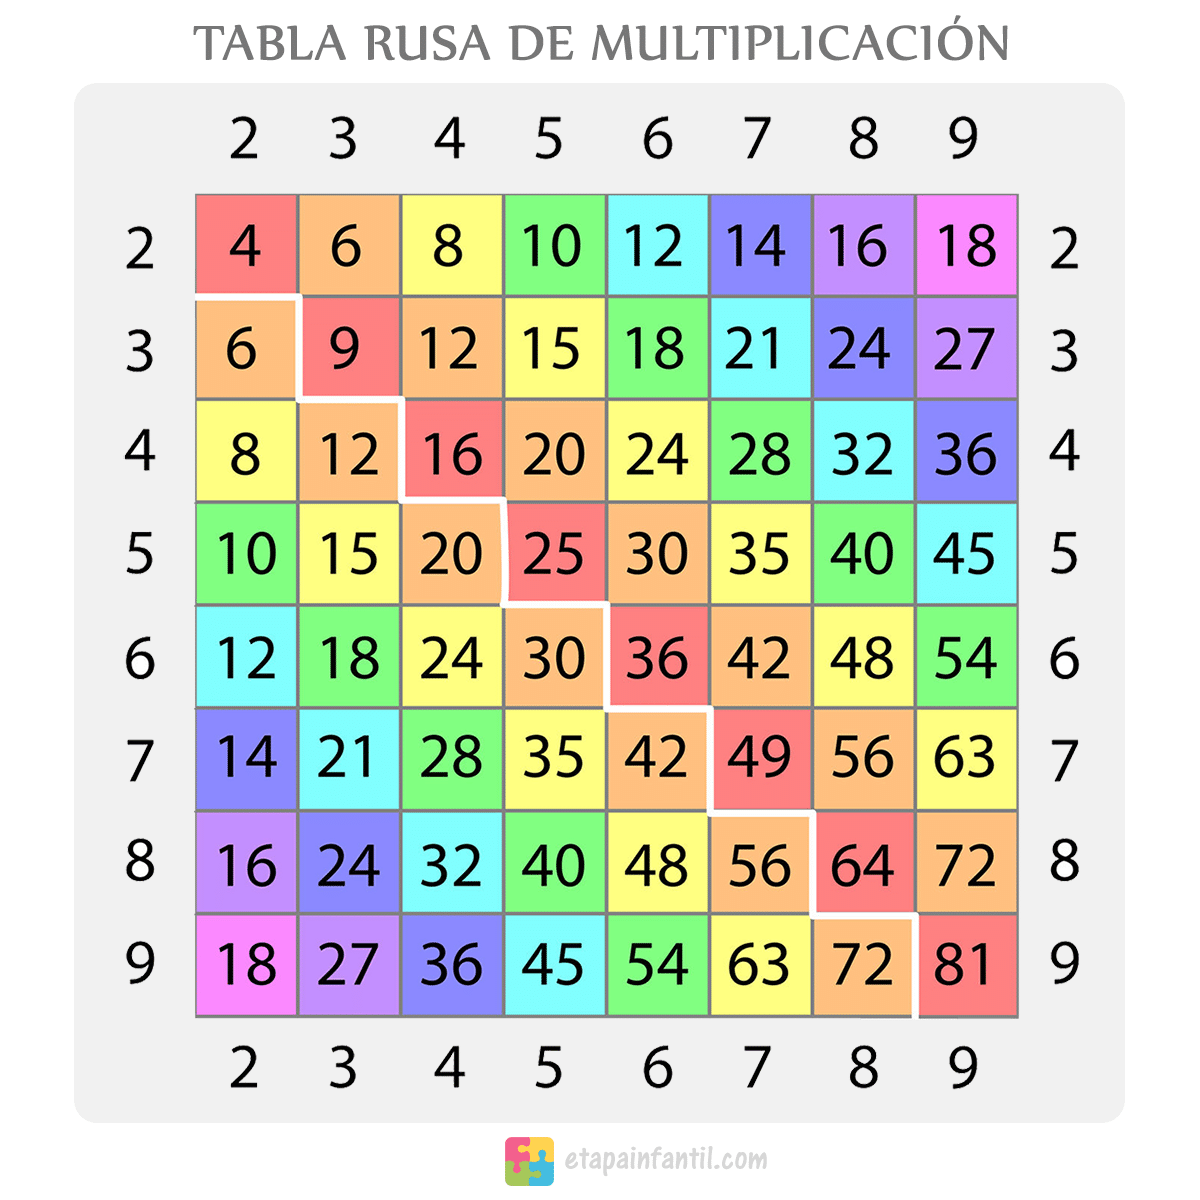 La tabla de multiplicar rusa es muy eficiente para aprender las tablas.